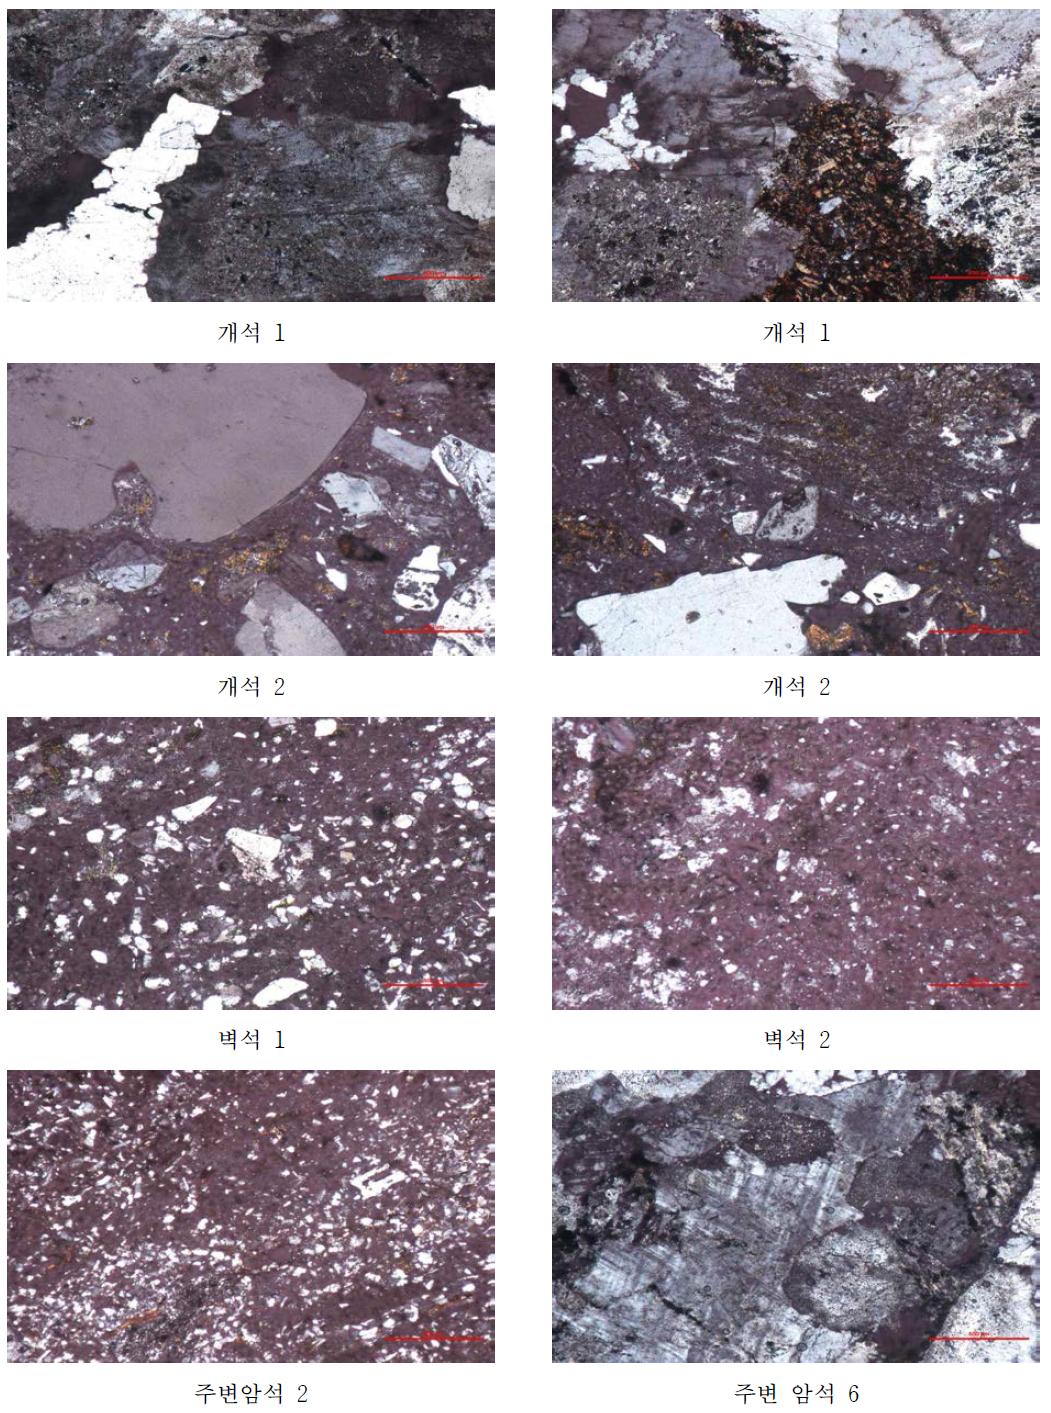 자라 고분 석재 및 주변 암석의 광물학적 특성